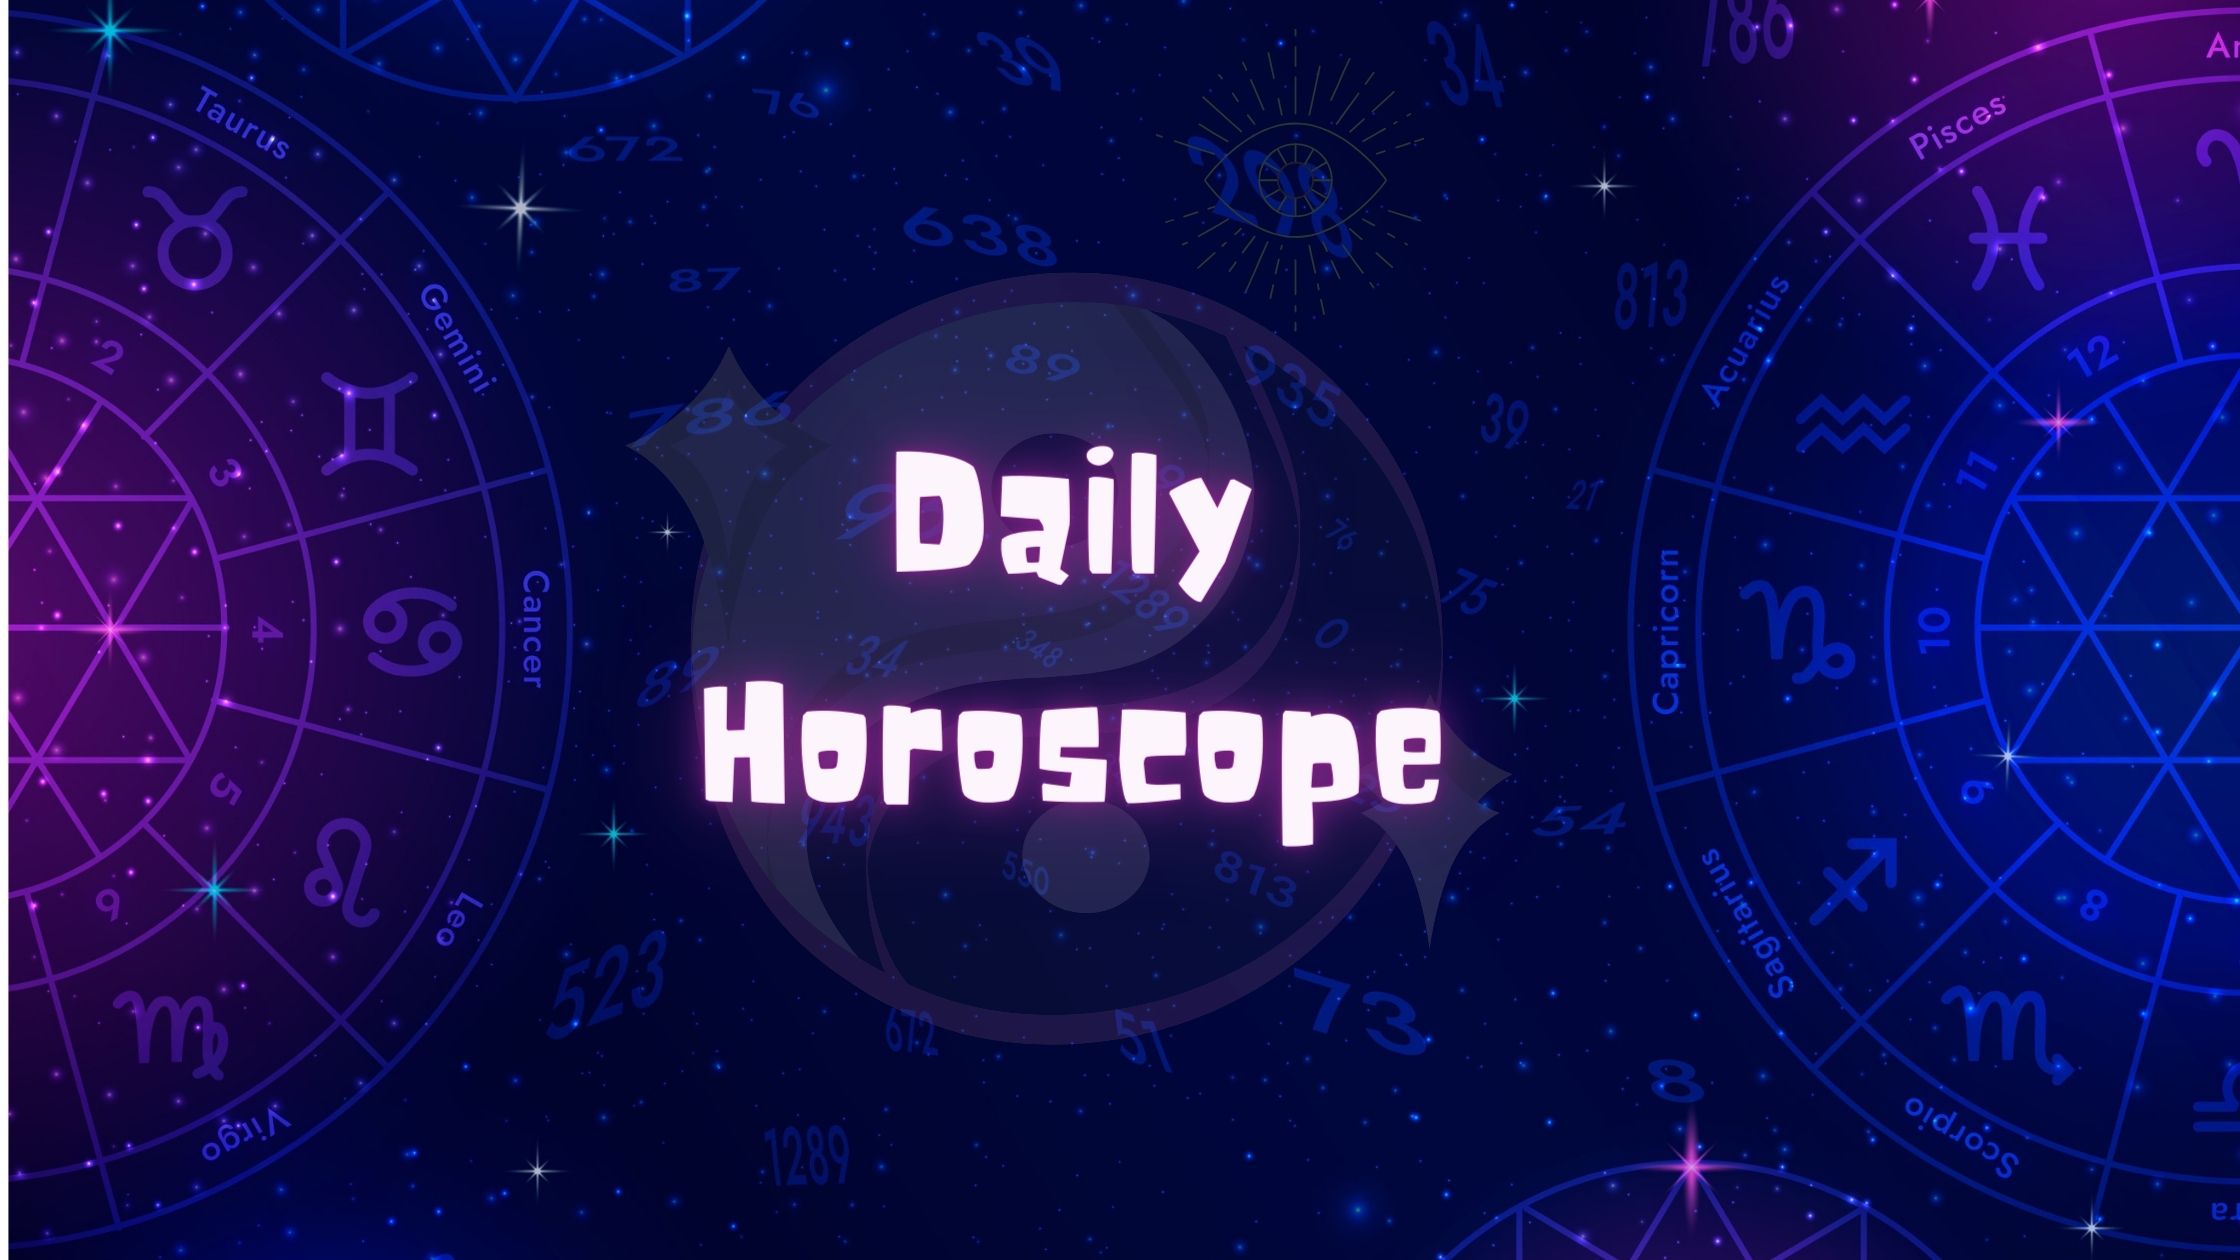 VAMA Daily Horoscope